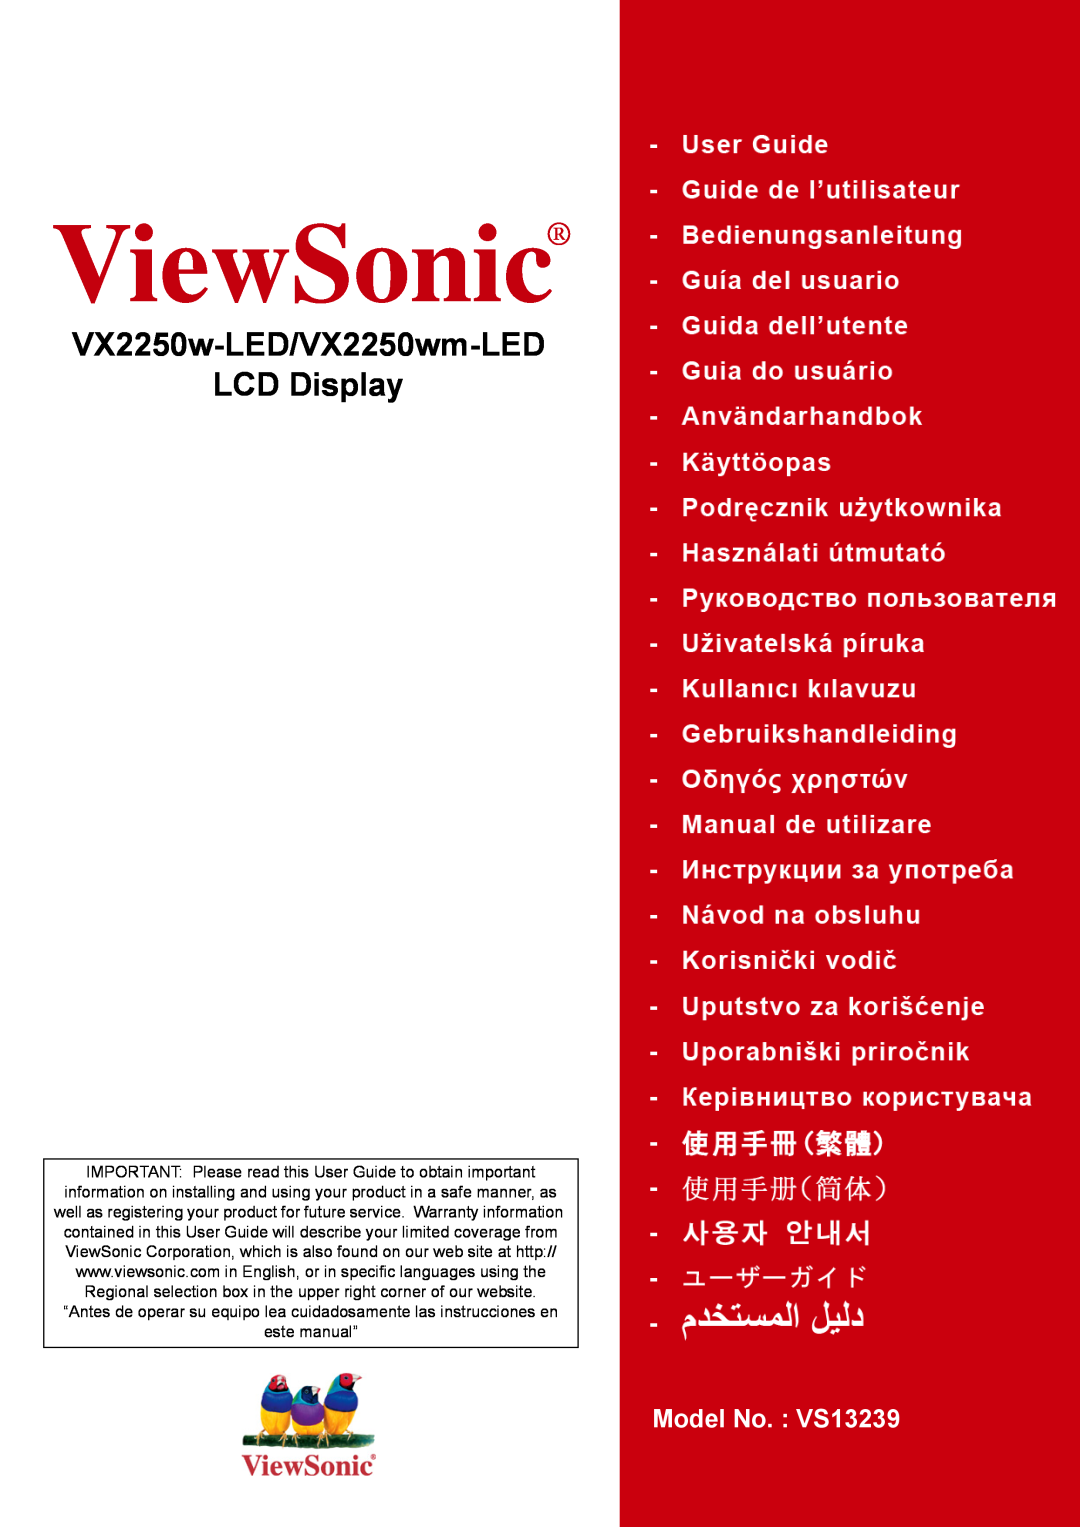 ViewSonic VX2250W-LED warranty VX2250w-LED/VX2250wm-LED LCD Display, ViewSonic, Model No. VS13239 